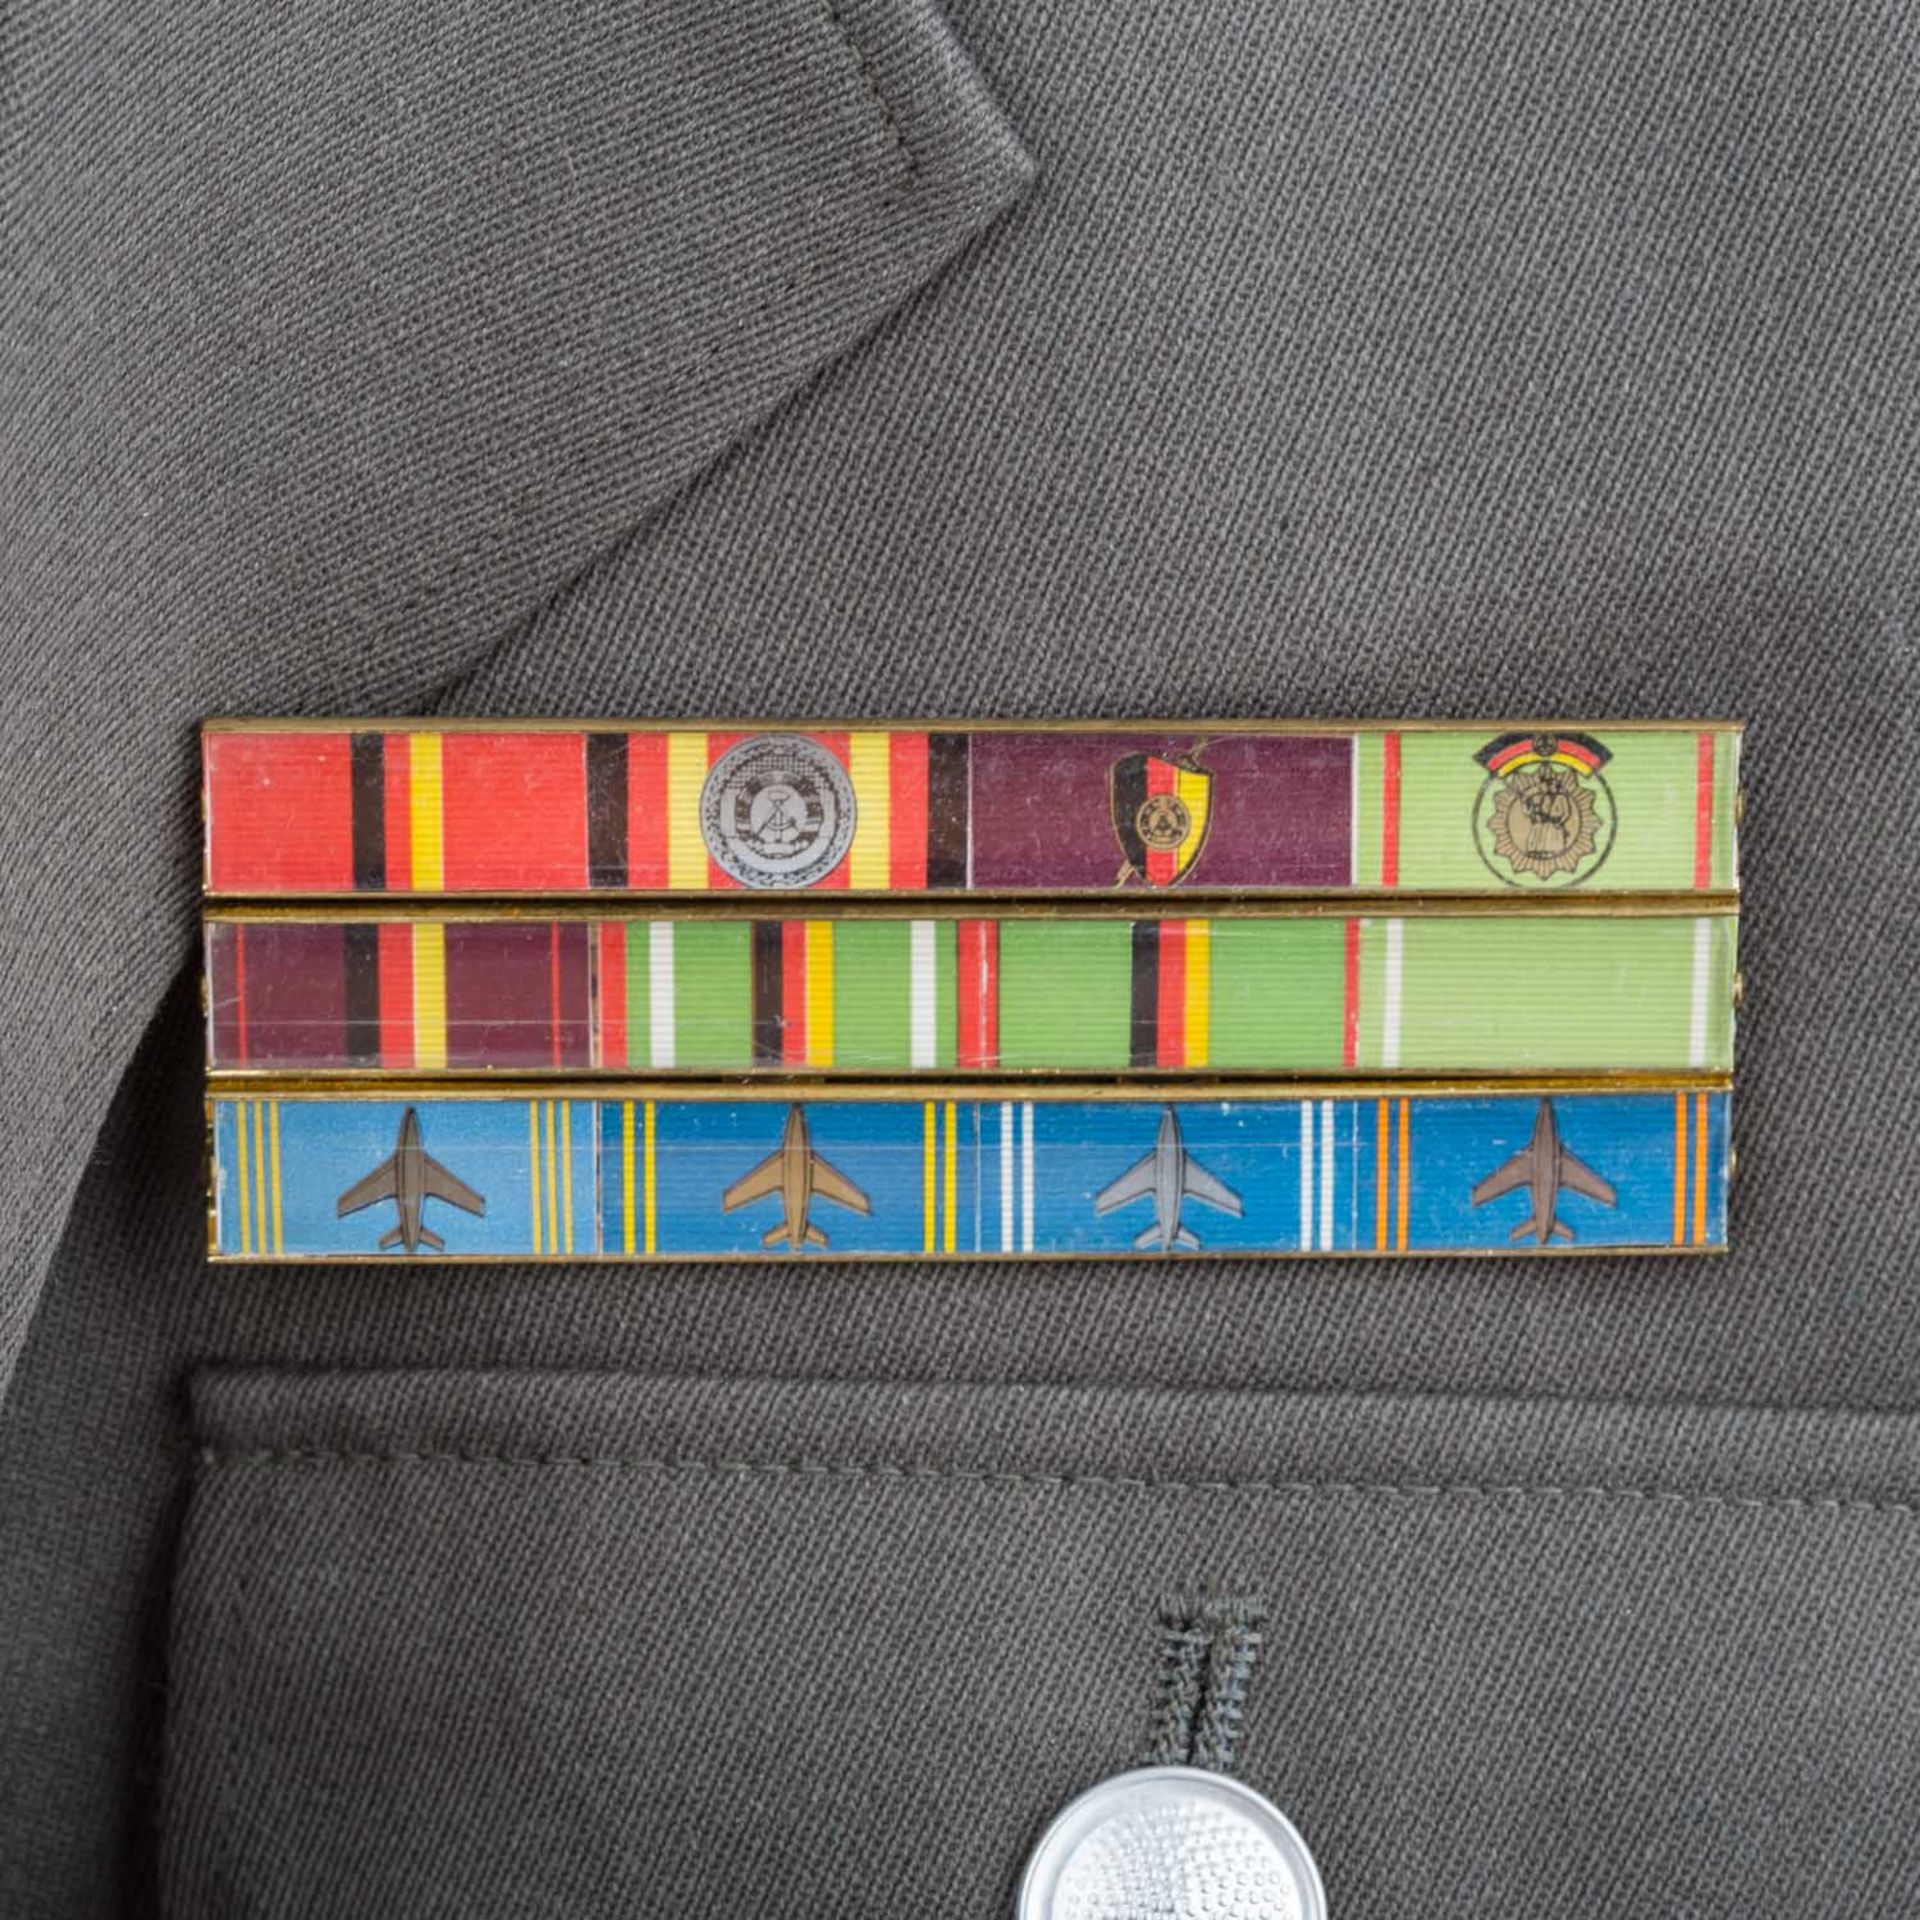 Uniformen - Dienstjacke der Nationalen Volksarmee - Image 3 of 6